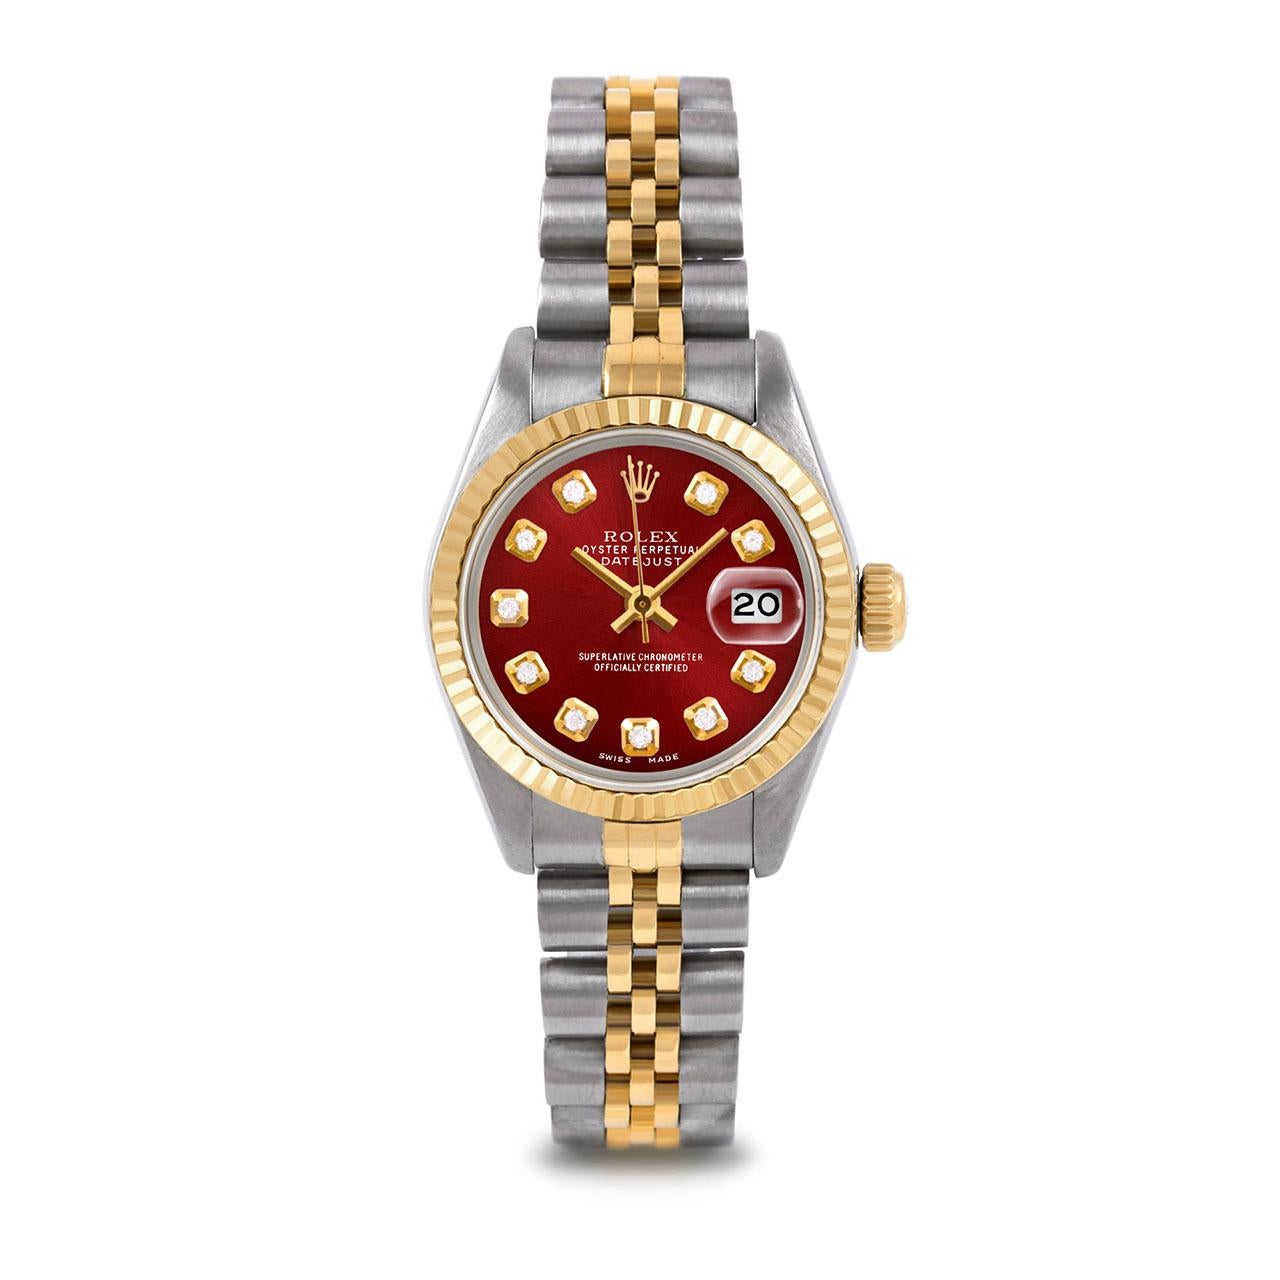 Pre-Owned Rolex 6917 Damen 26mm zwei Ton Datejust Uhr, benutzerdefinierte rote Diamant-Zifferblatt und kannelierte Lünette auf Rolex 14K Gelbgold und Edelstahl Jubilee Band.   

SKU 6917-TT-ROT-DIA-AM-FLT-JBL


Marke/Modell:        Rolex